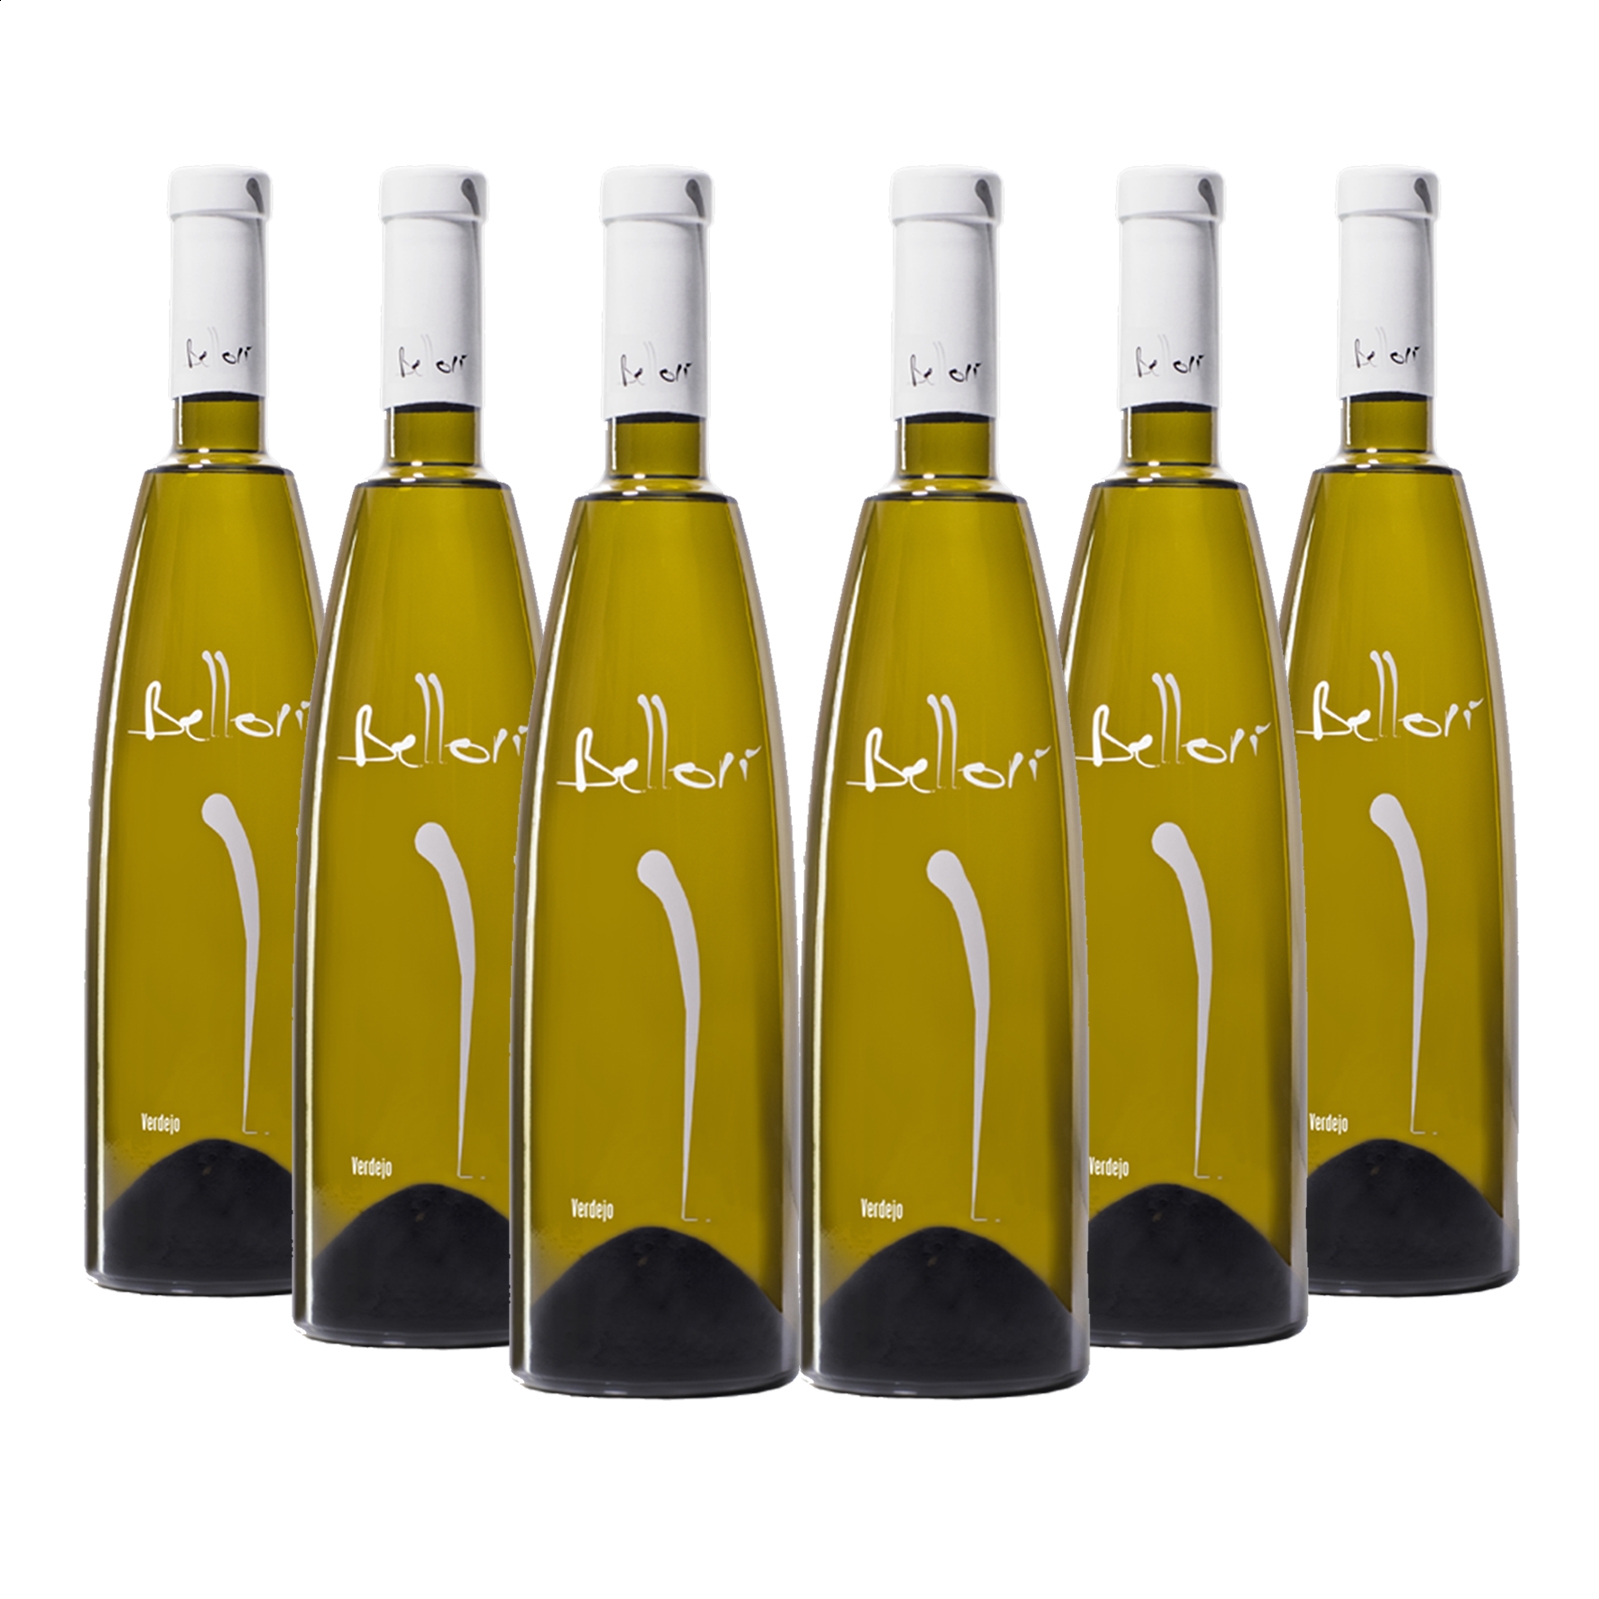 Bellori - Vino blanco Verdejo fermentado en barrica D.O. Rueda 75cl, 6uds